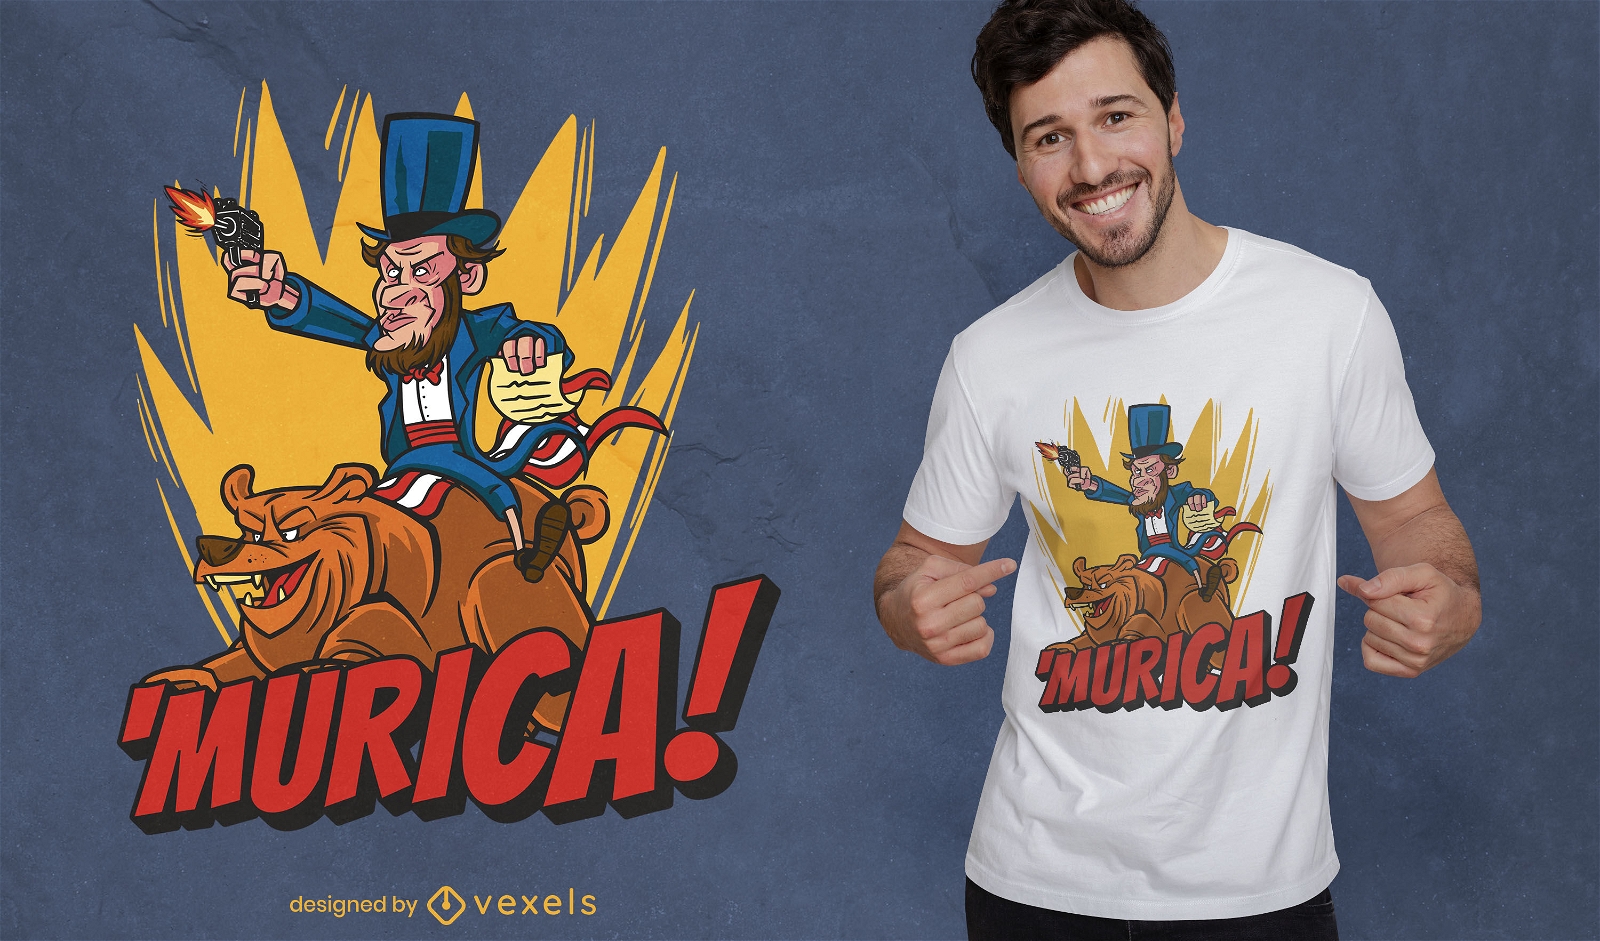 Amerikanischer Mann auf B?ren-T-Shirt-Design